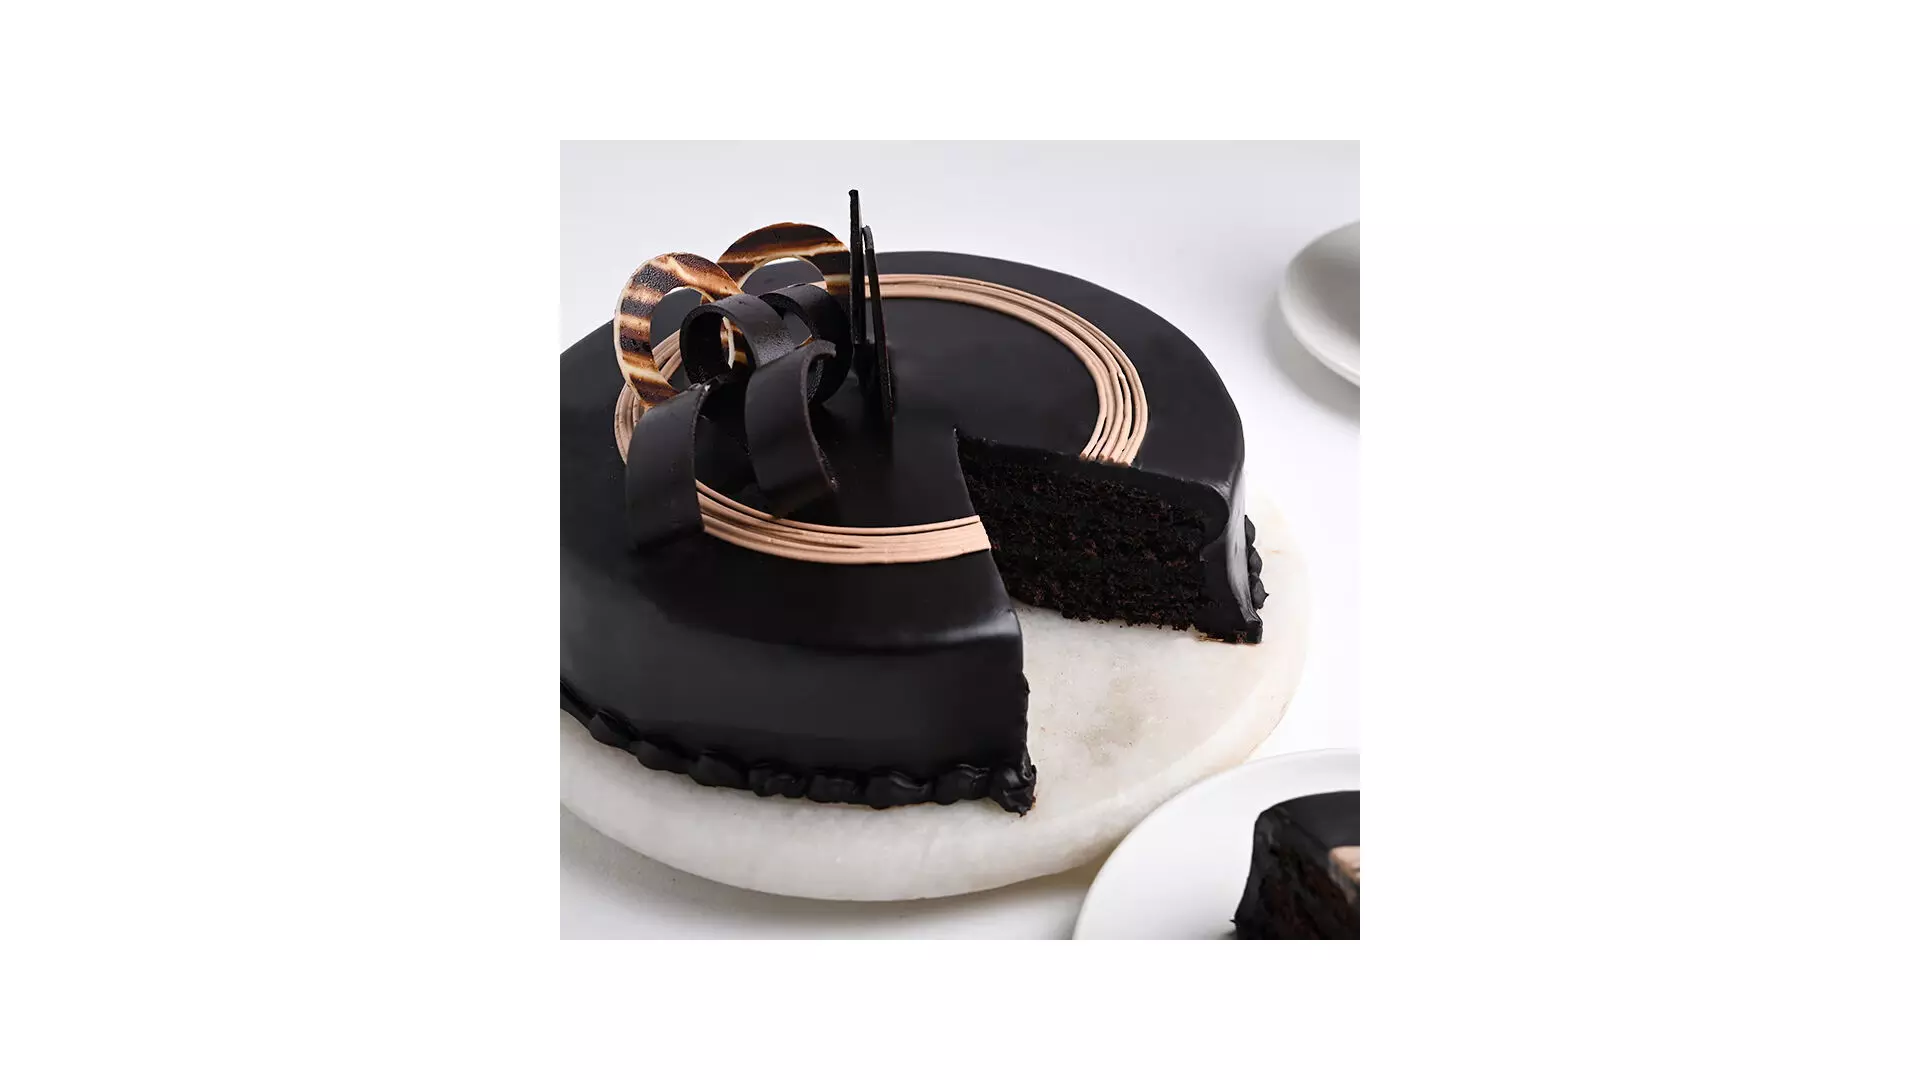 चॉकलेट ट्रफल केक से करें अपने प्यार का इजहार, जानें इसे बनाने की विधि और रेसिपी